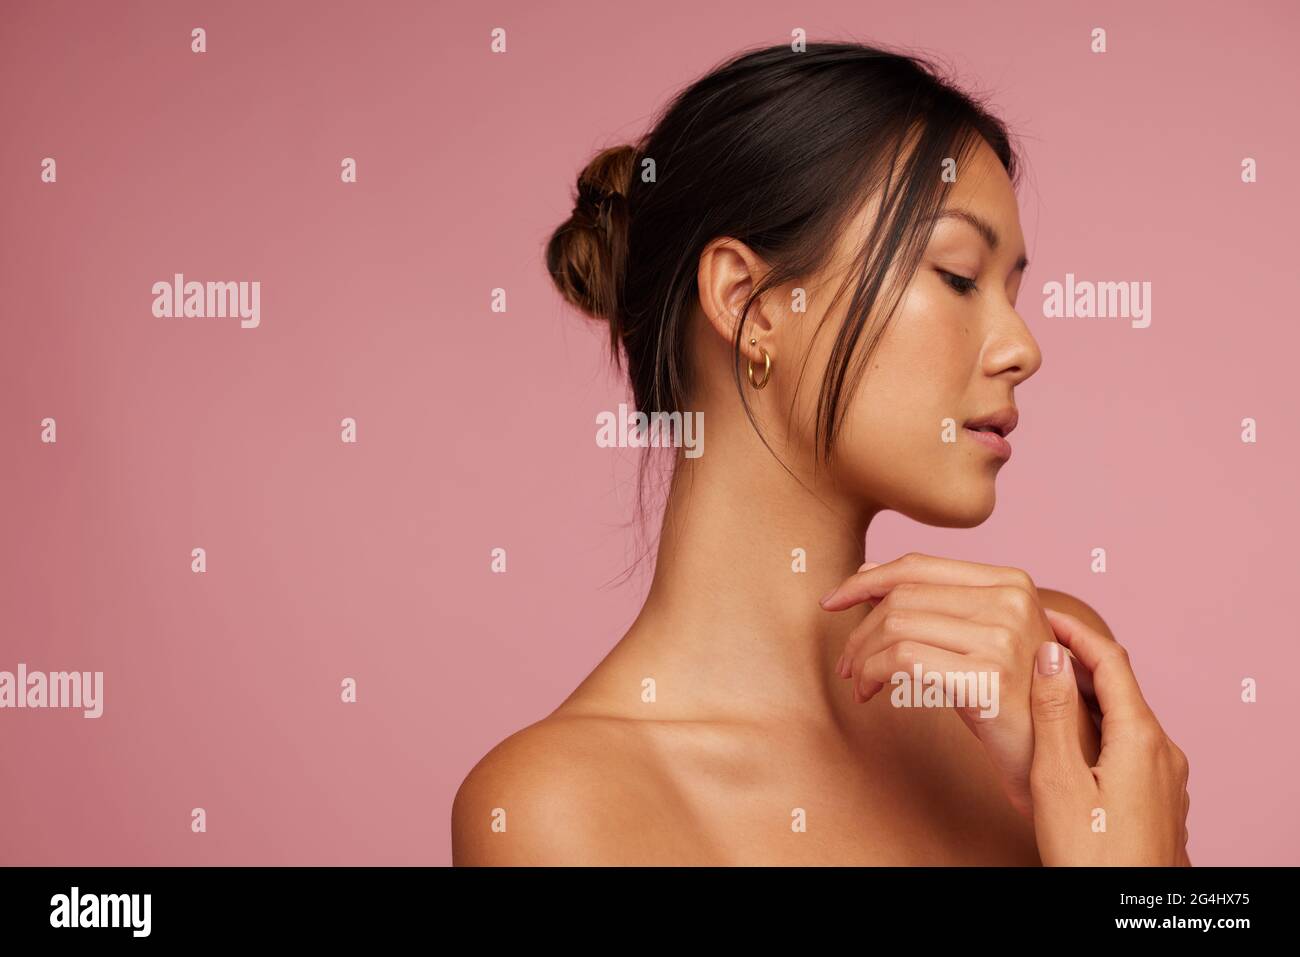 Junge asiatische Frau mit schöner Haut. Schönes Weibchen mit geschlossenen Augen vor rosa Hintergrund. Stockfoto